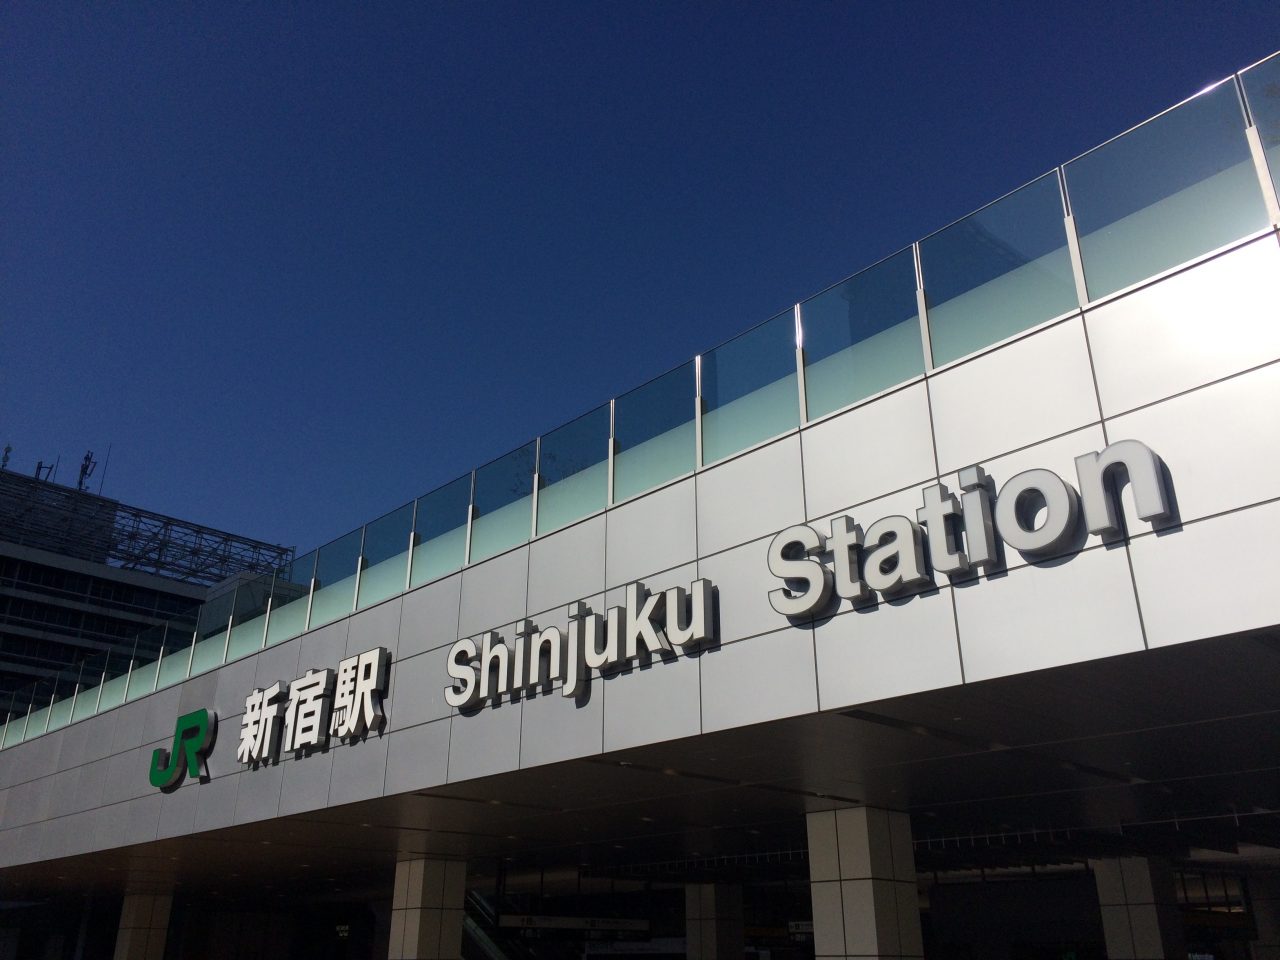 新宿駅新南改札口の駅名サインの写真